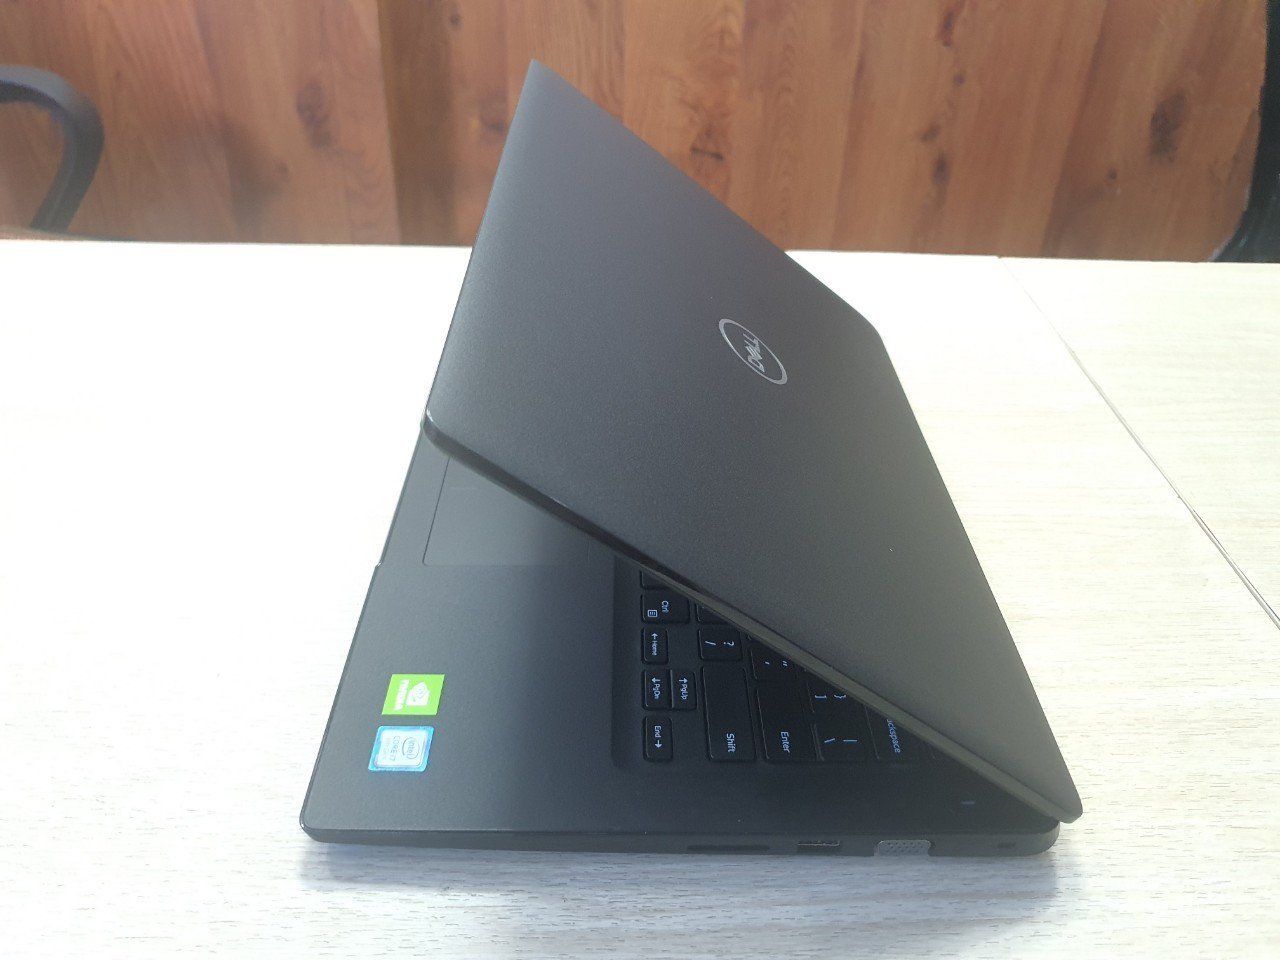 Khuyến mãi lớn: Mua Laptop Dell tại Thủ Dầu Một - Giảm ngay 200k khi check-in! - Ảnh 3